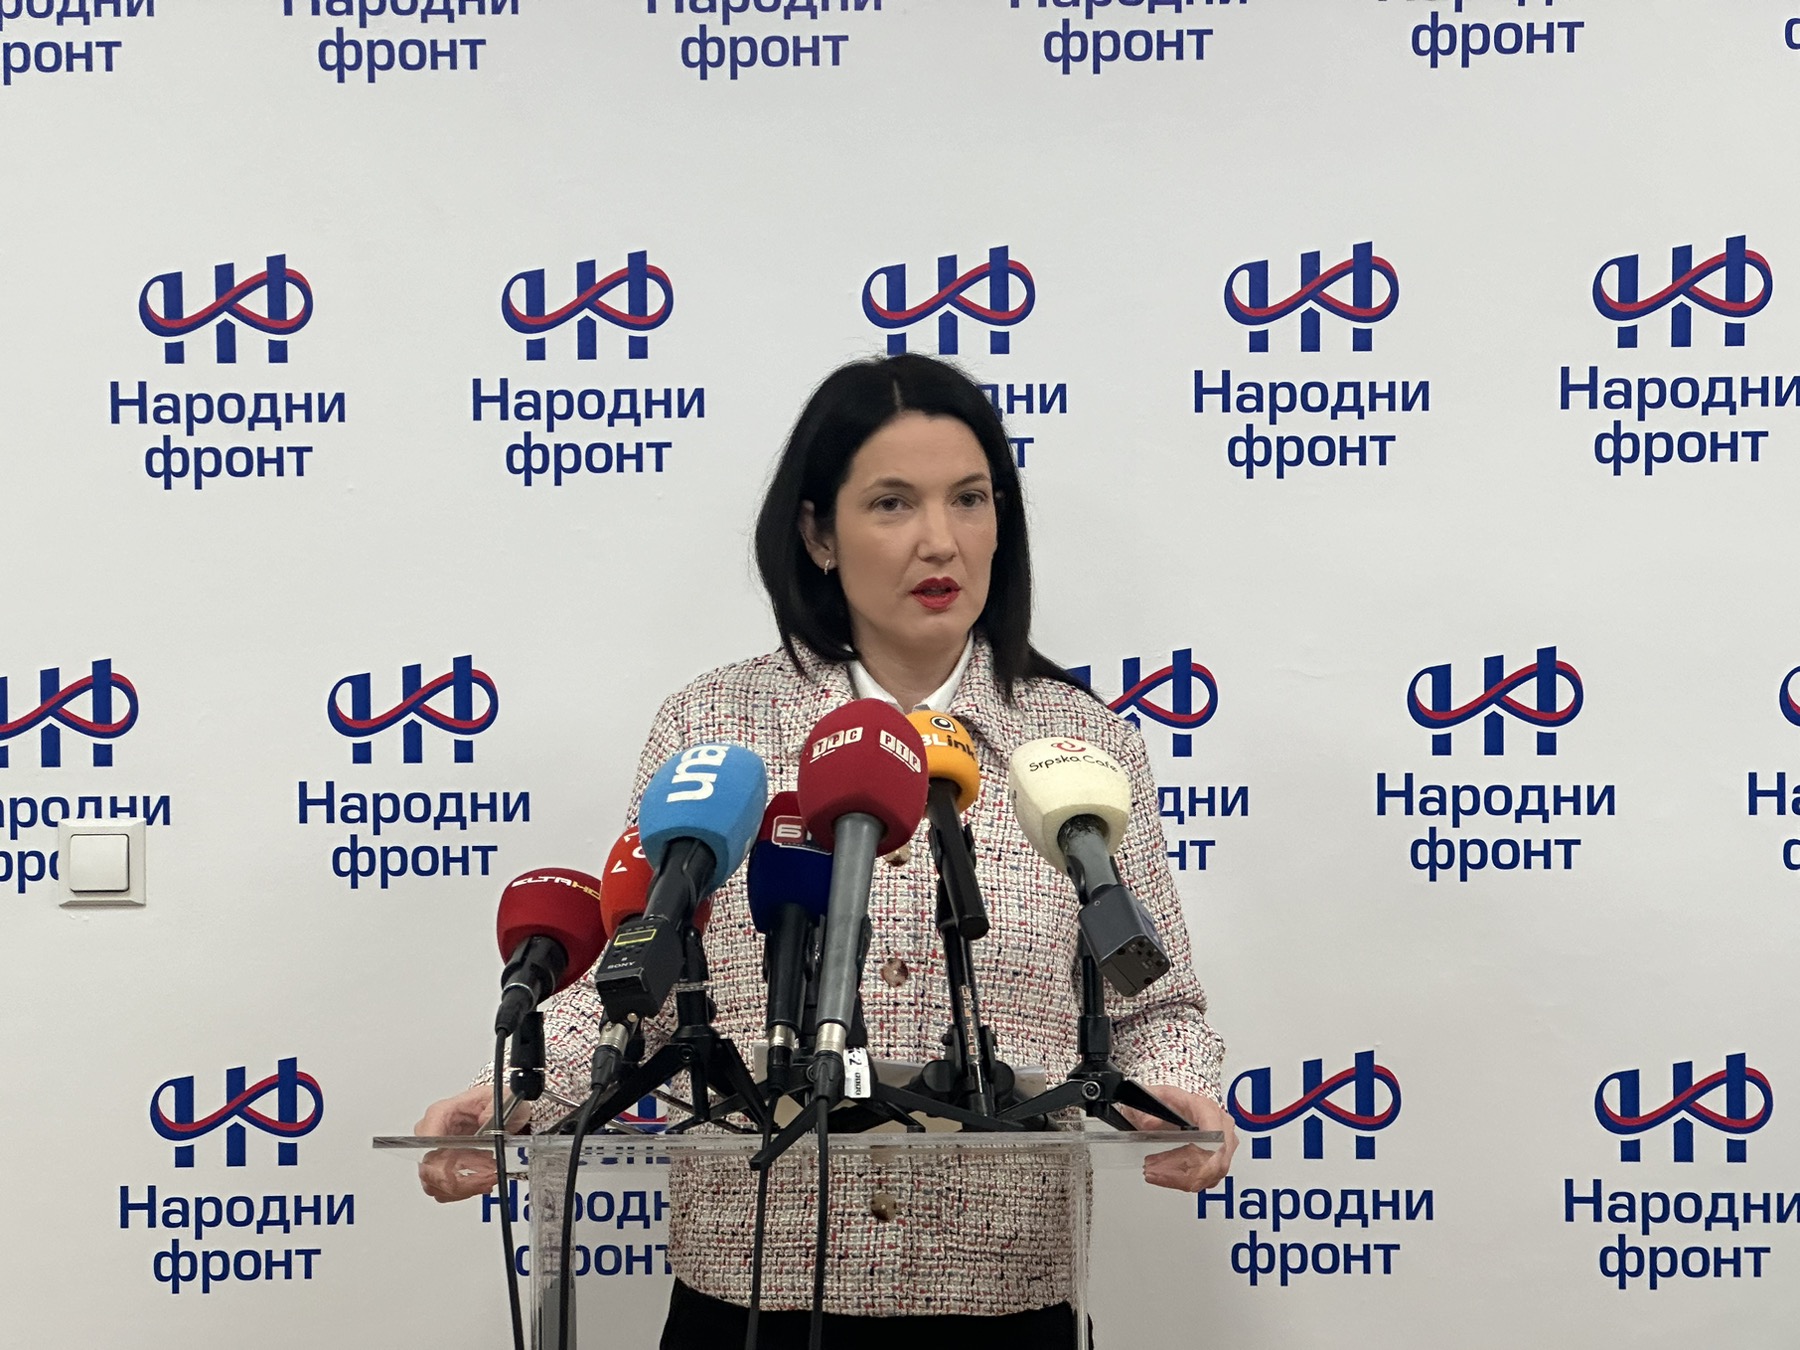 Trivićeva komentarisala ostavke u gradskim preduzećima